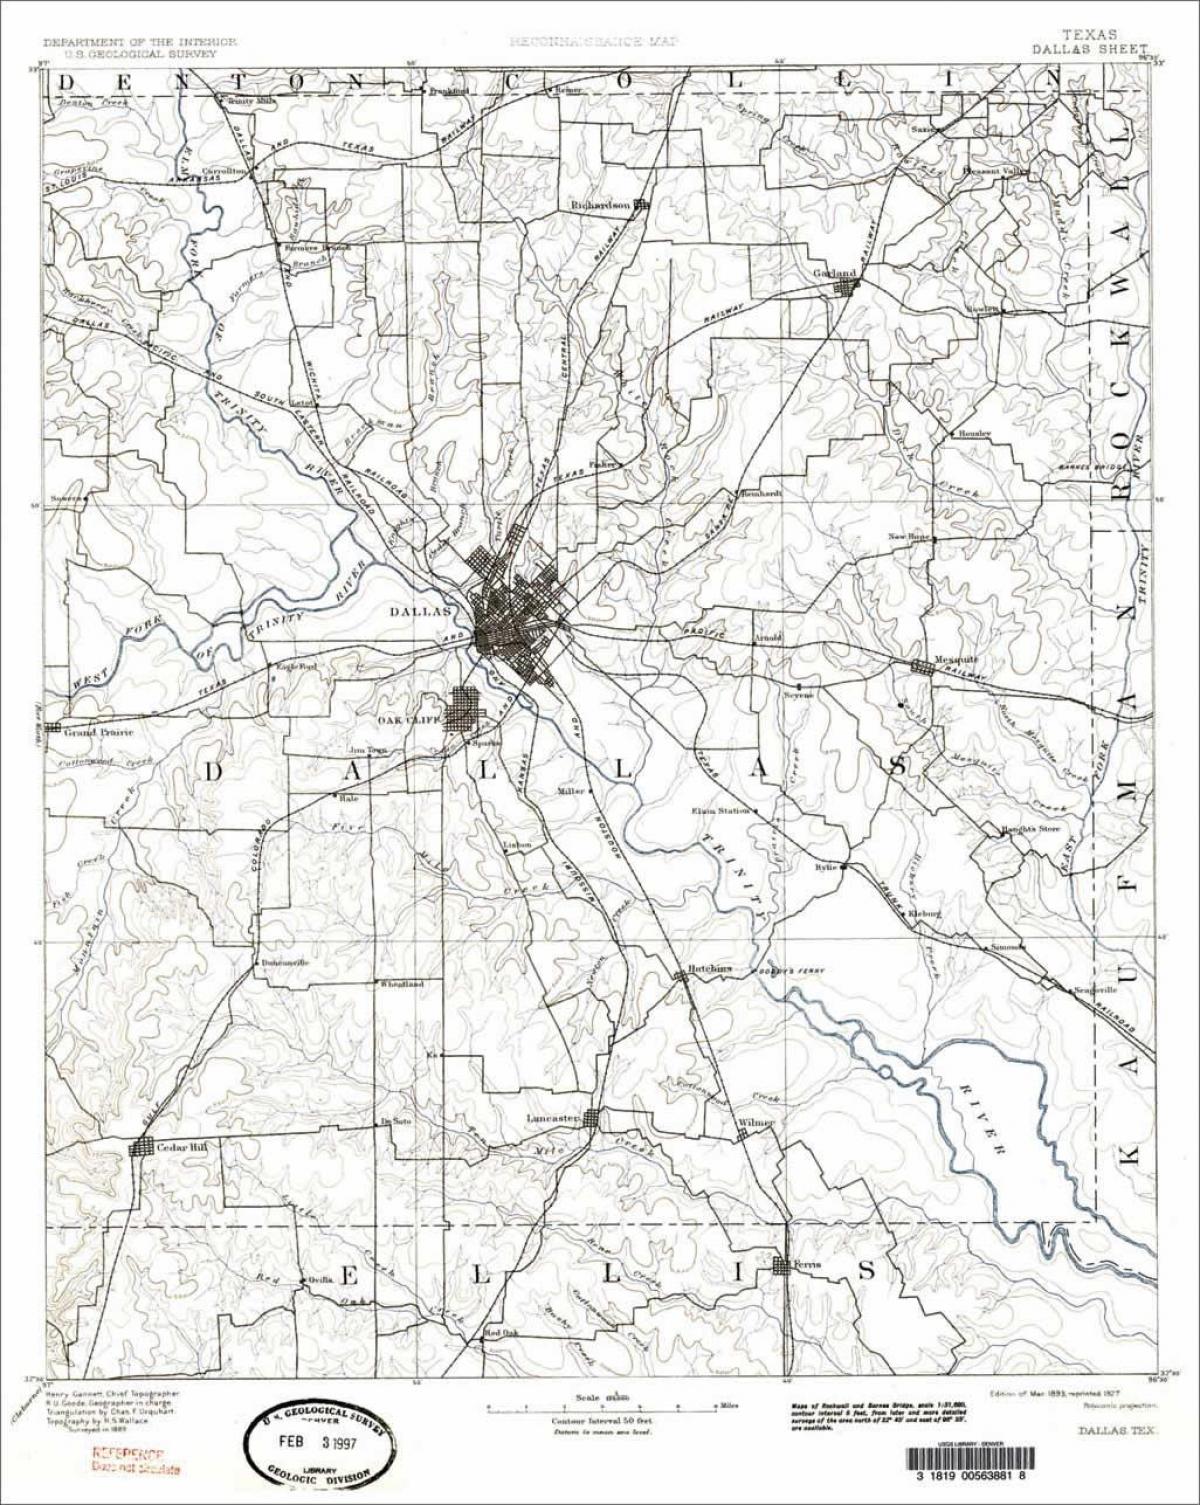 Ντάλας, Texas εμφάνιση χάρτη